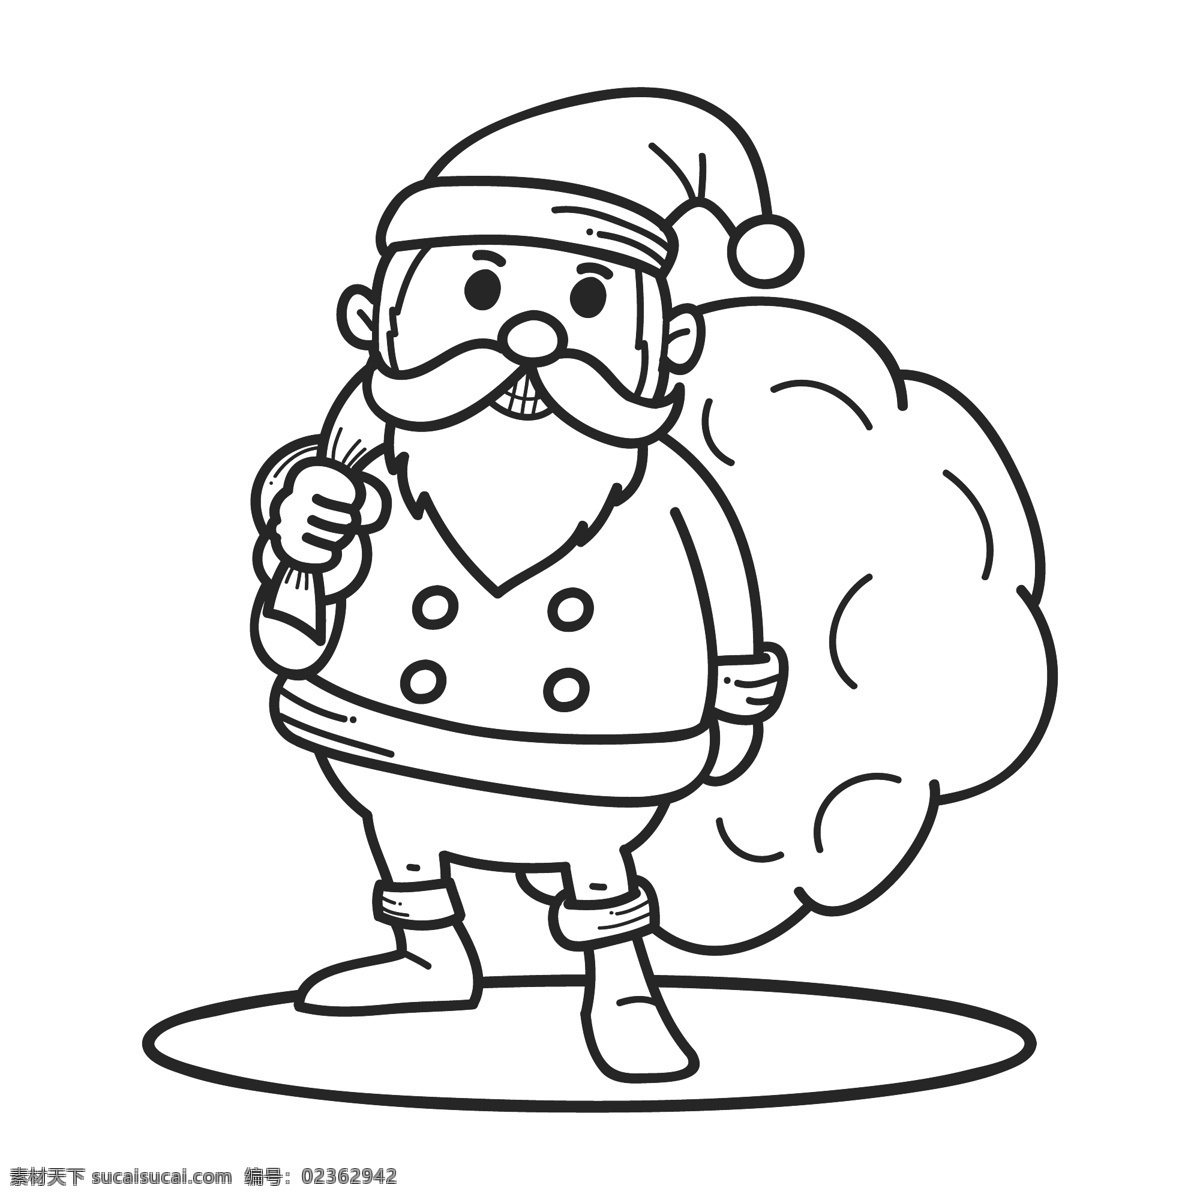 圣诞老人 线 稿 矢量 漫画 角色 源文件 高清 免费素材 图片图案 设计图案 下载素材